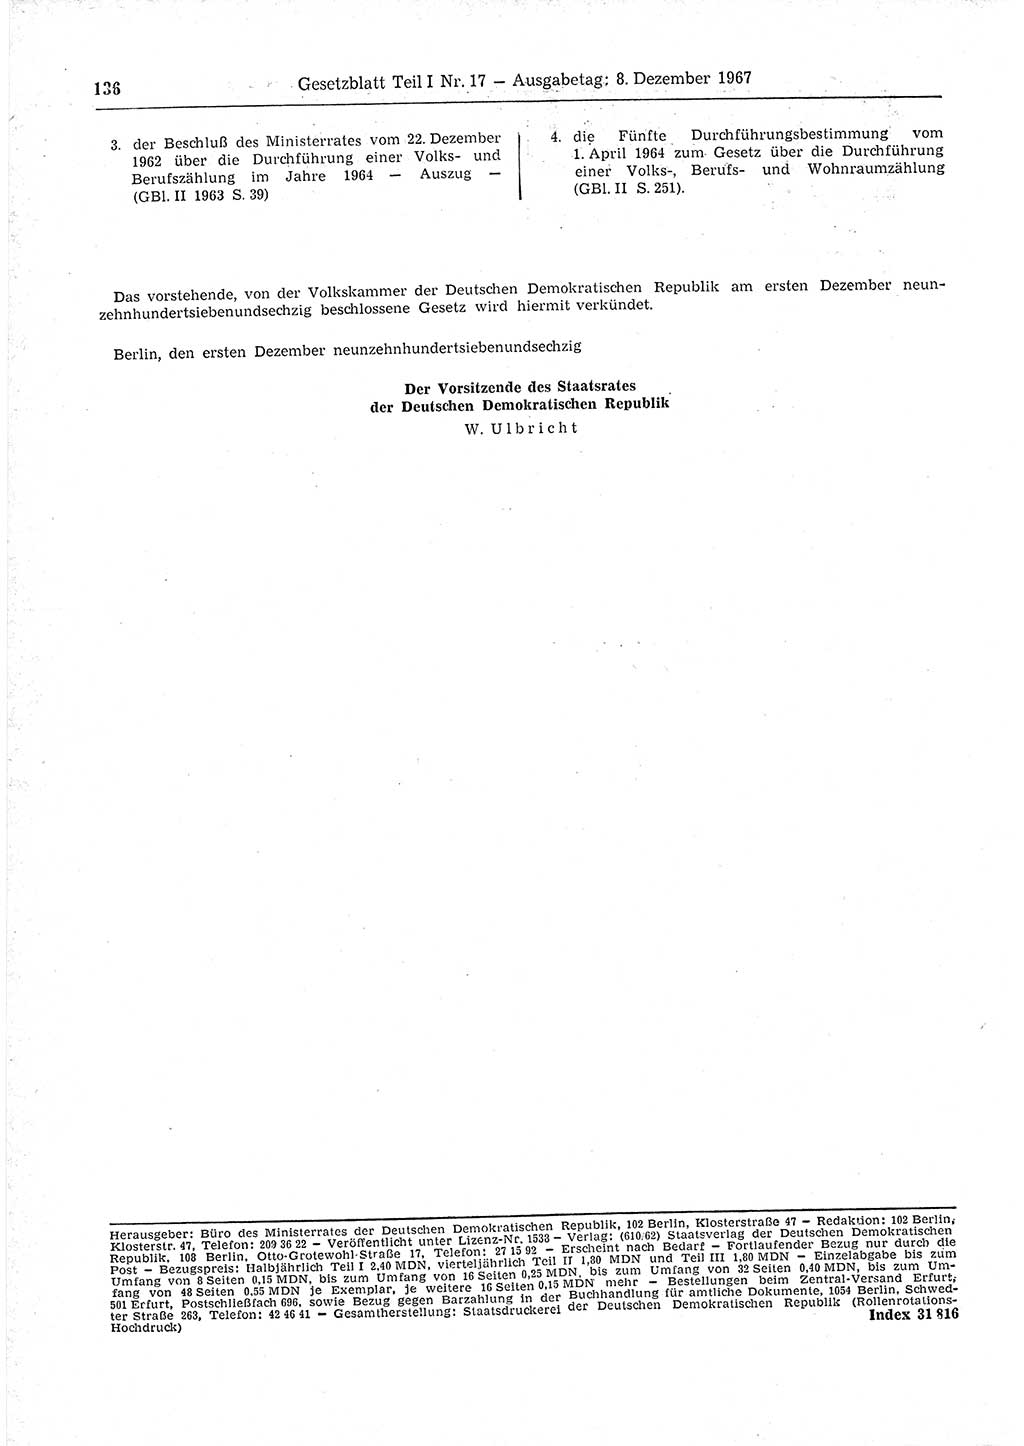 Gesetzblatt (GBl.) der Deutschen Demokratischen Republik (DDR) Teil Ⅰ 1967, Seite 136 (GBl. DDR Ⅰ 1967, S. 136)